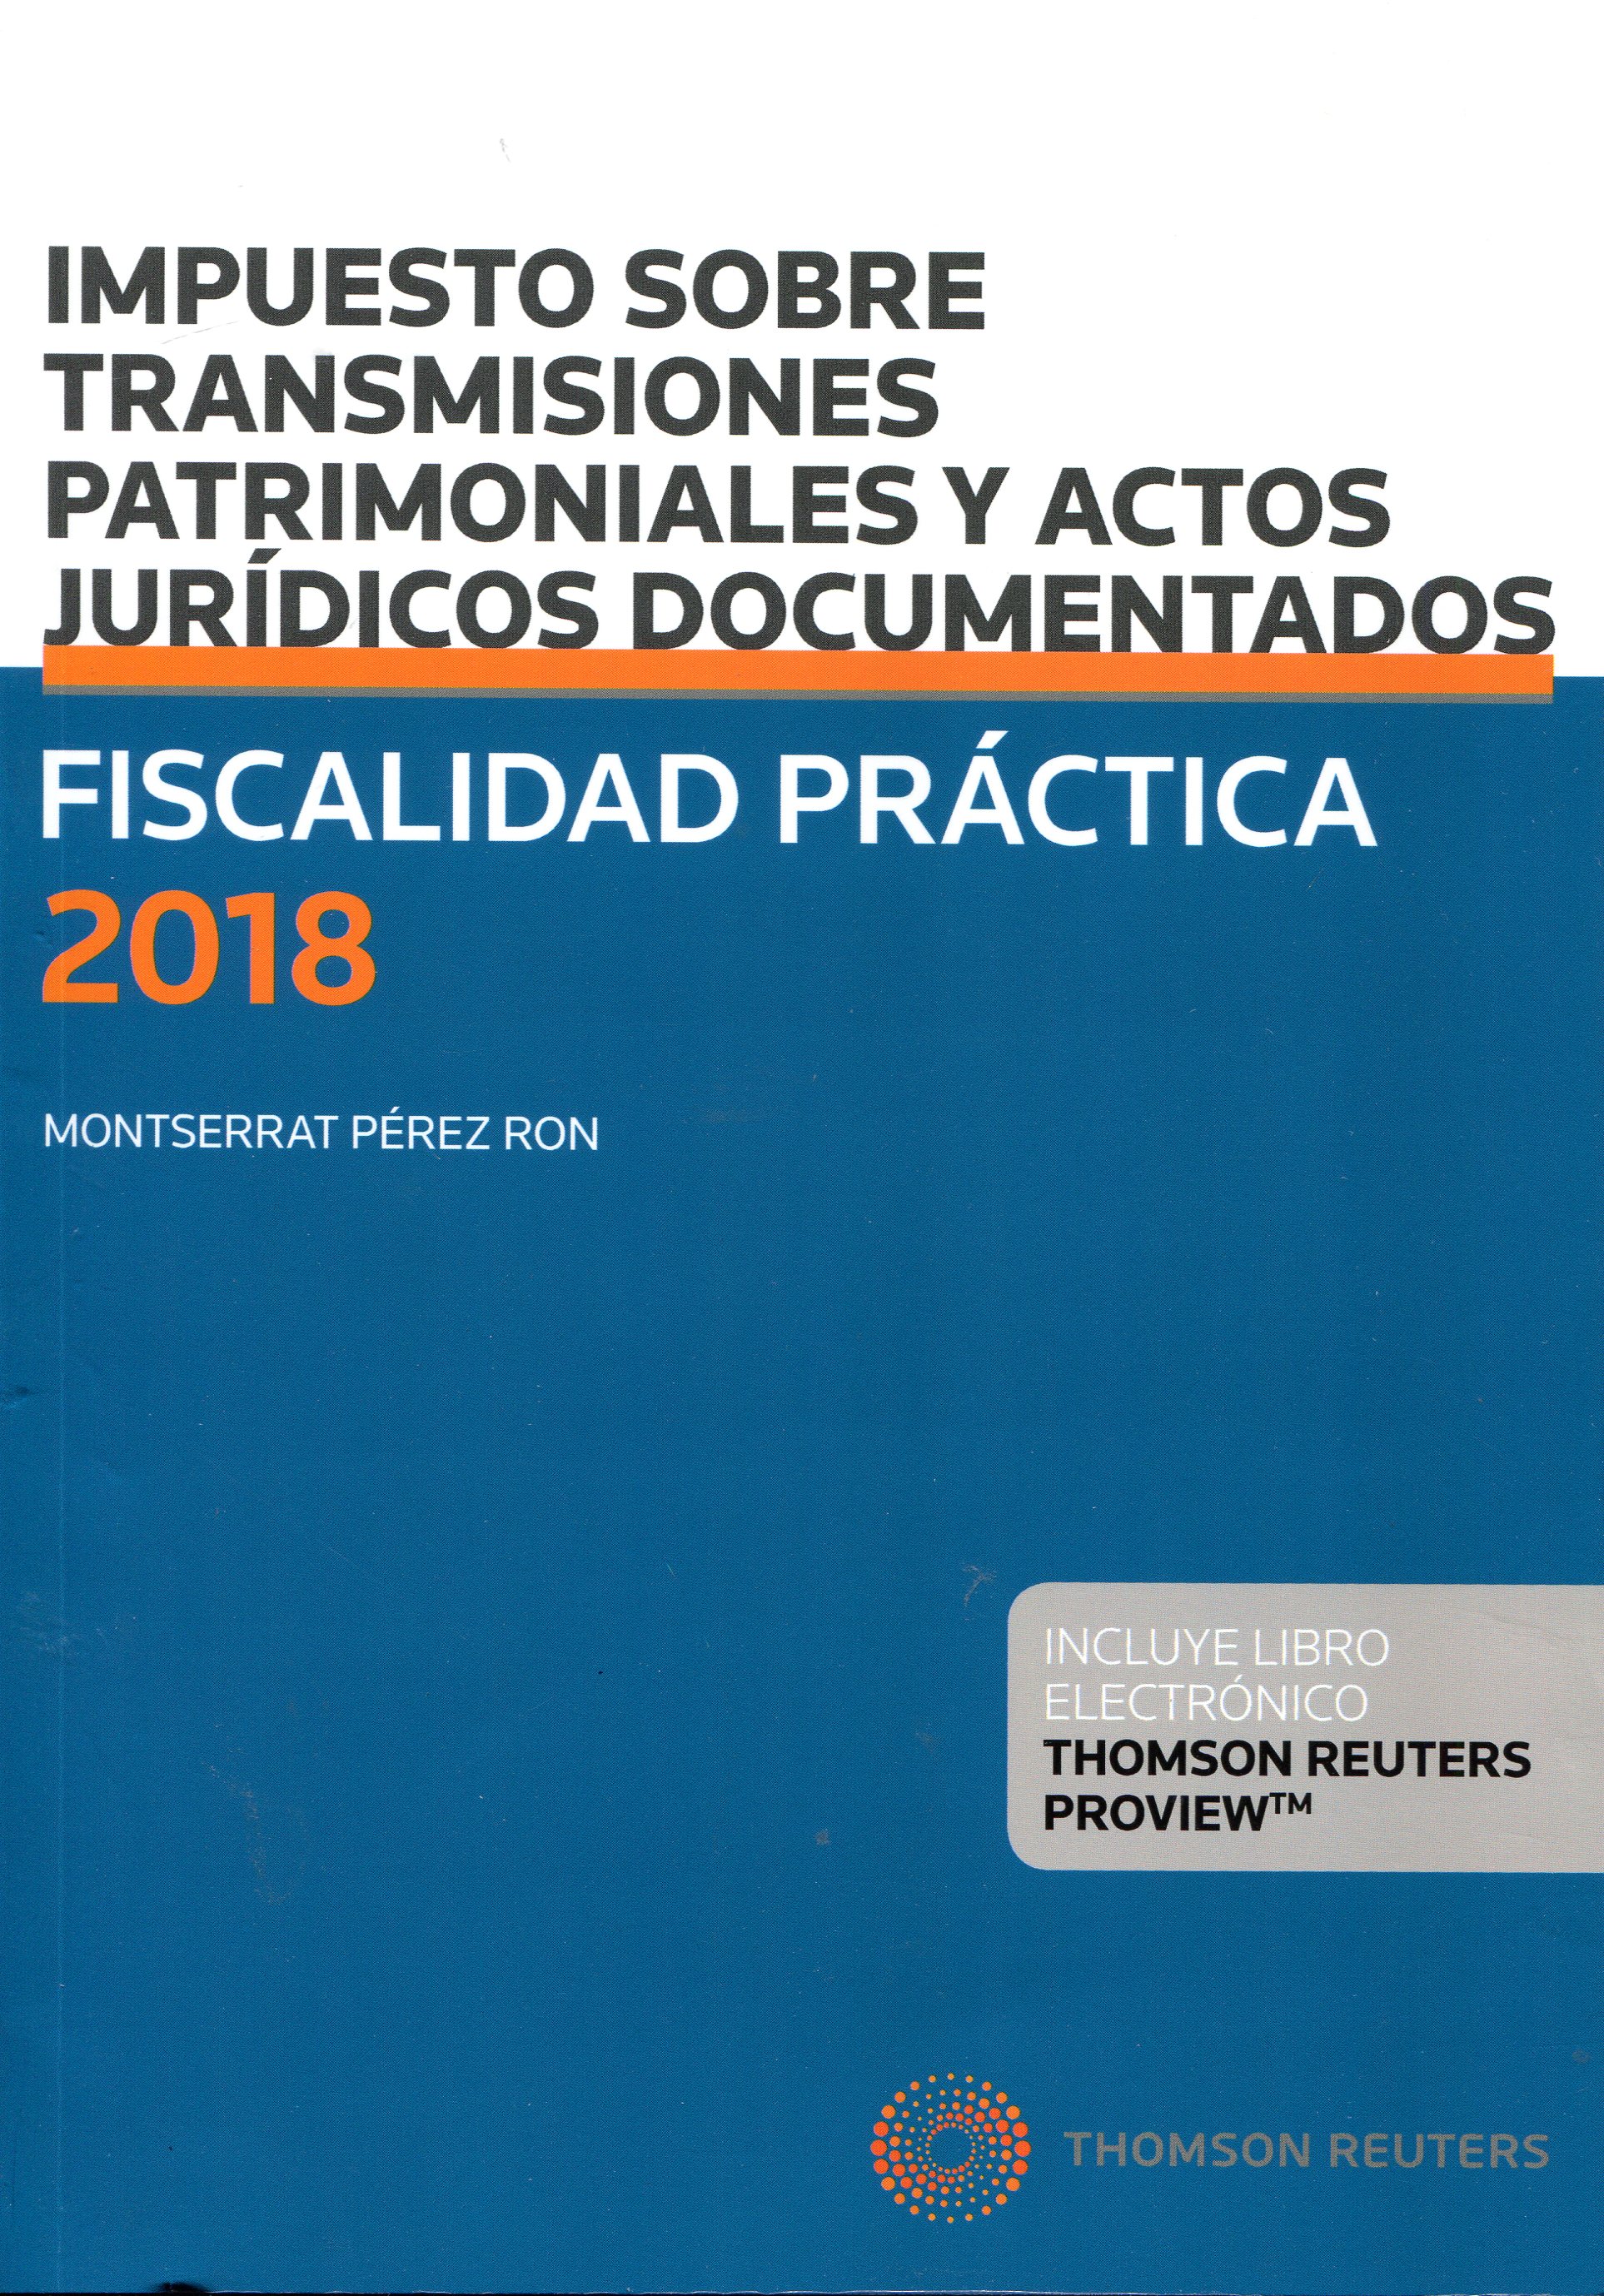 Fiscalidad práctica 2018